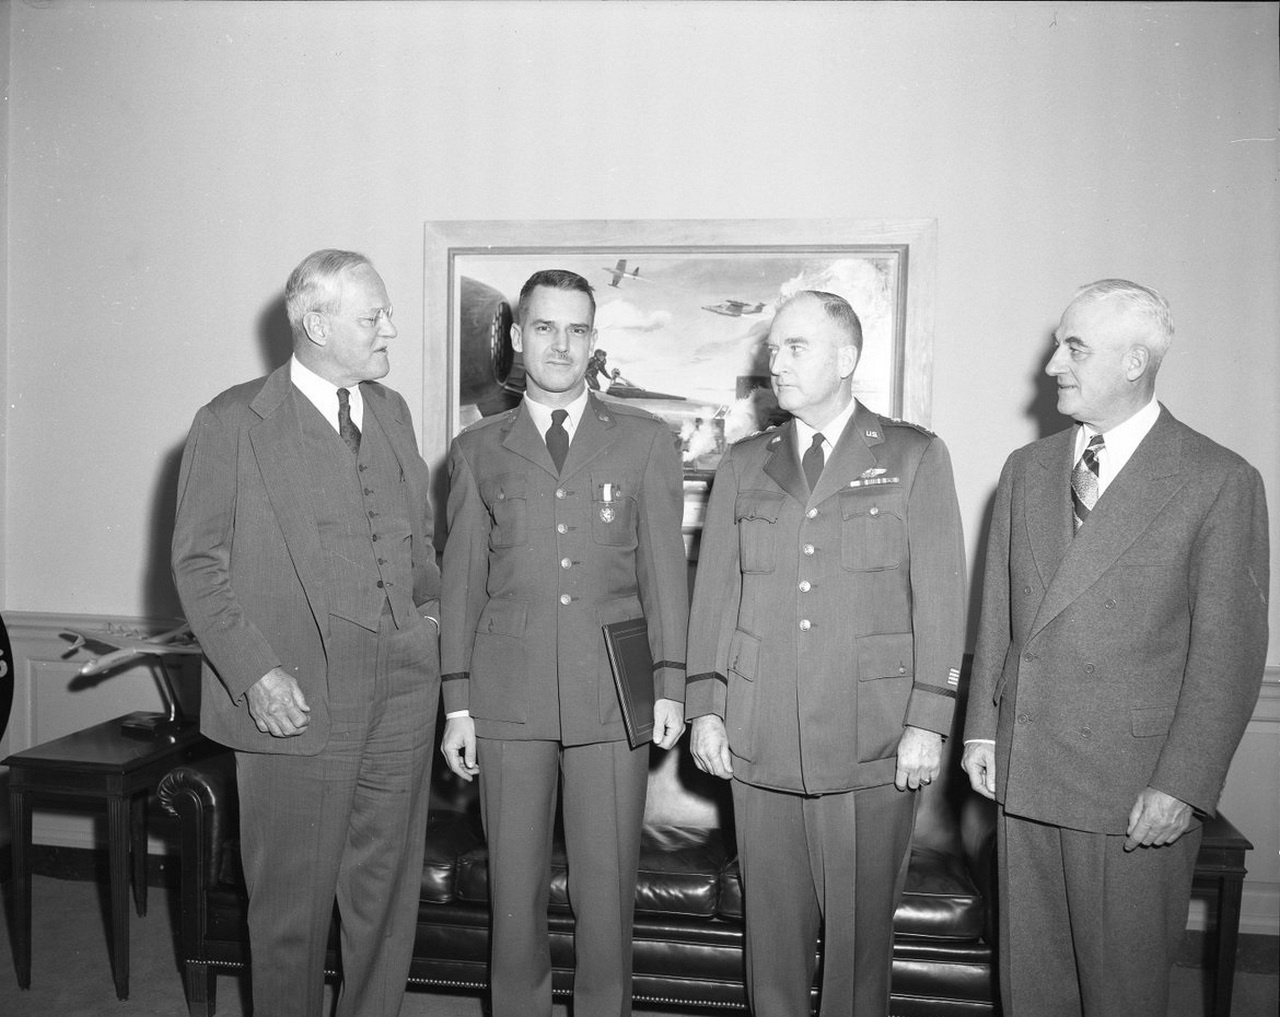 Директор ЦРУ Аллен Даллес (слева) с экспертом ЦРУ по борьбе с повстанцами Эдвардом Лэнсдейлом, начальником штаба ВВС США Натаном Ф. Твинингом и заместителем директора ЦРУ Чарльзом П. Кэбеллом в 1955 году.